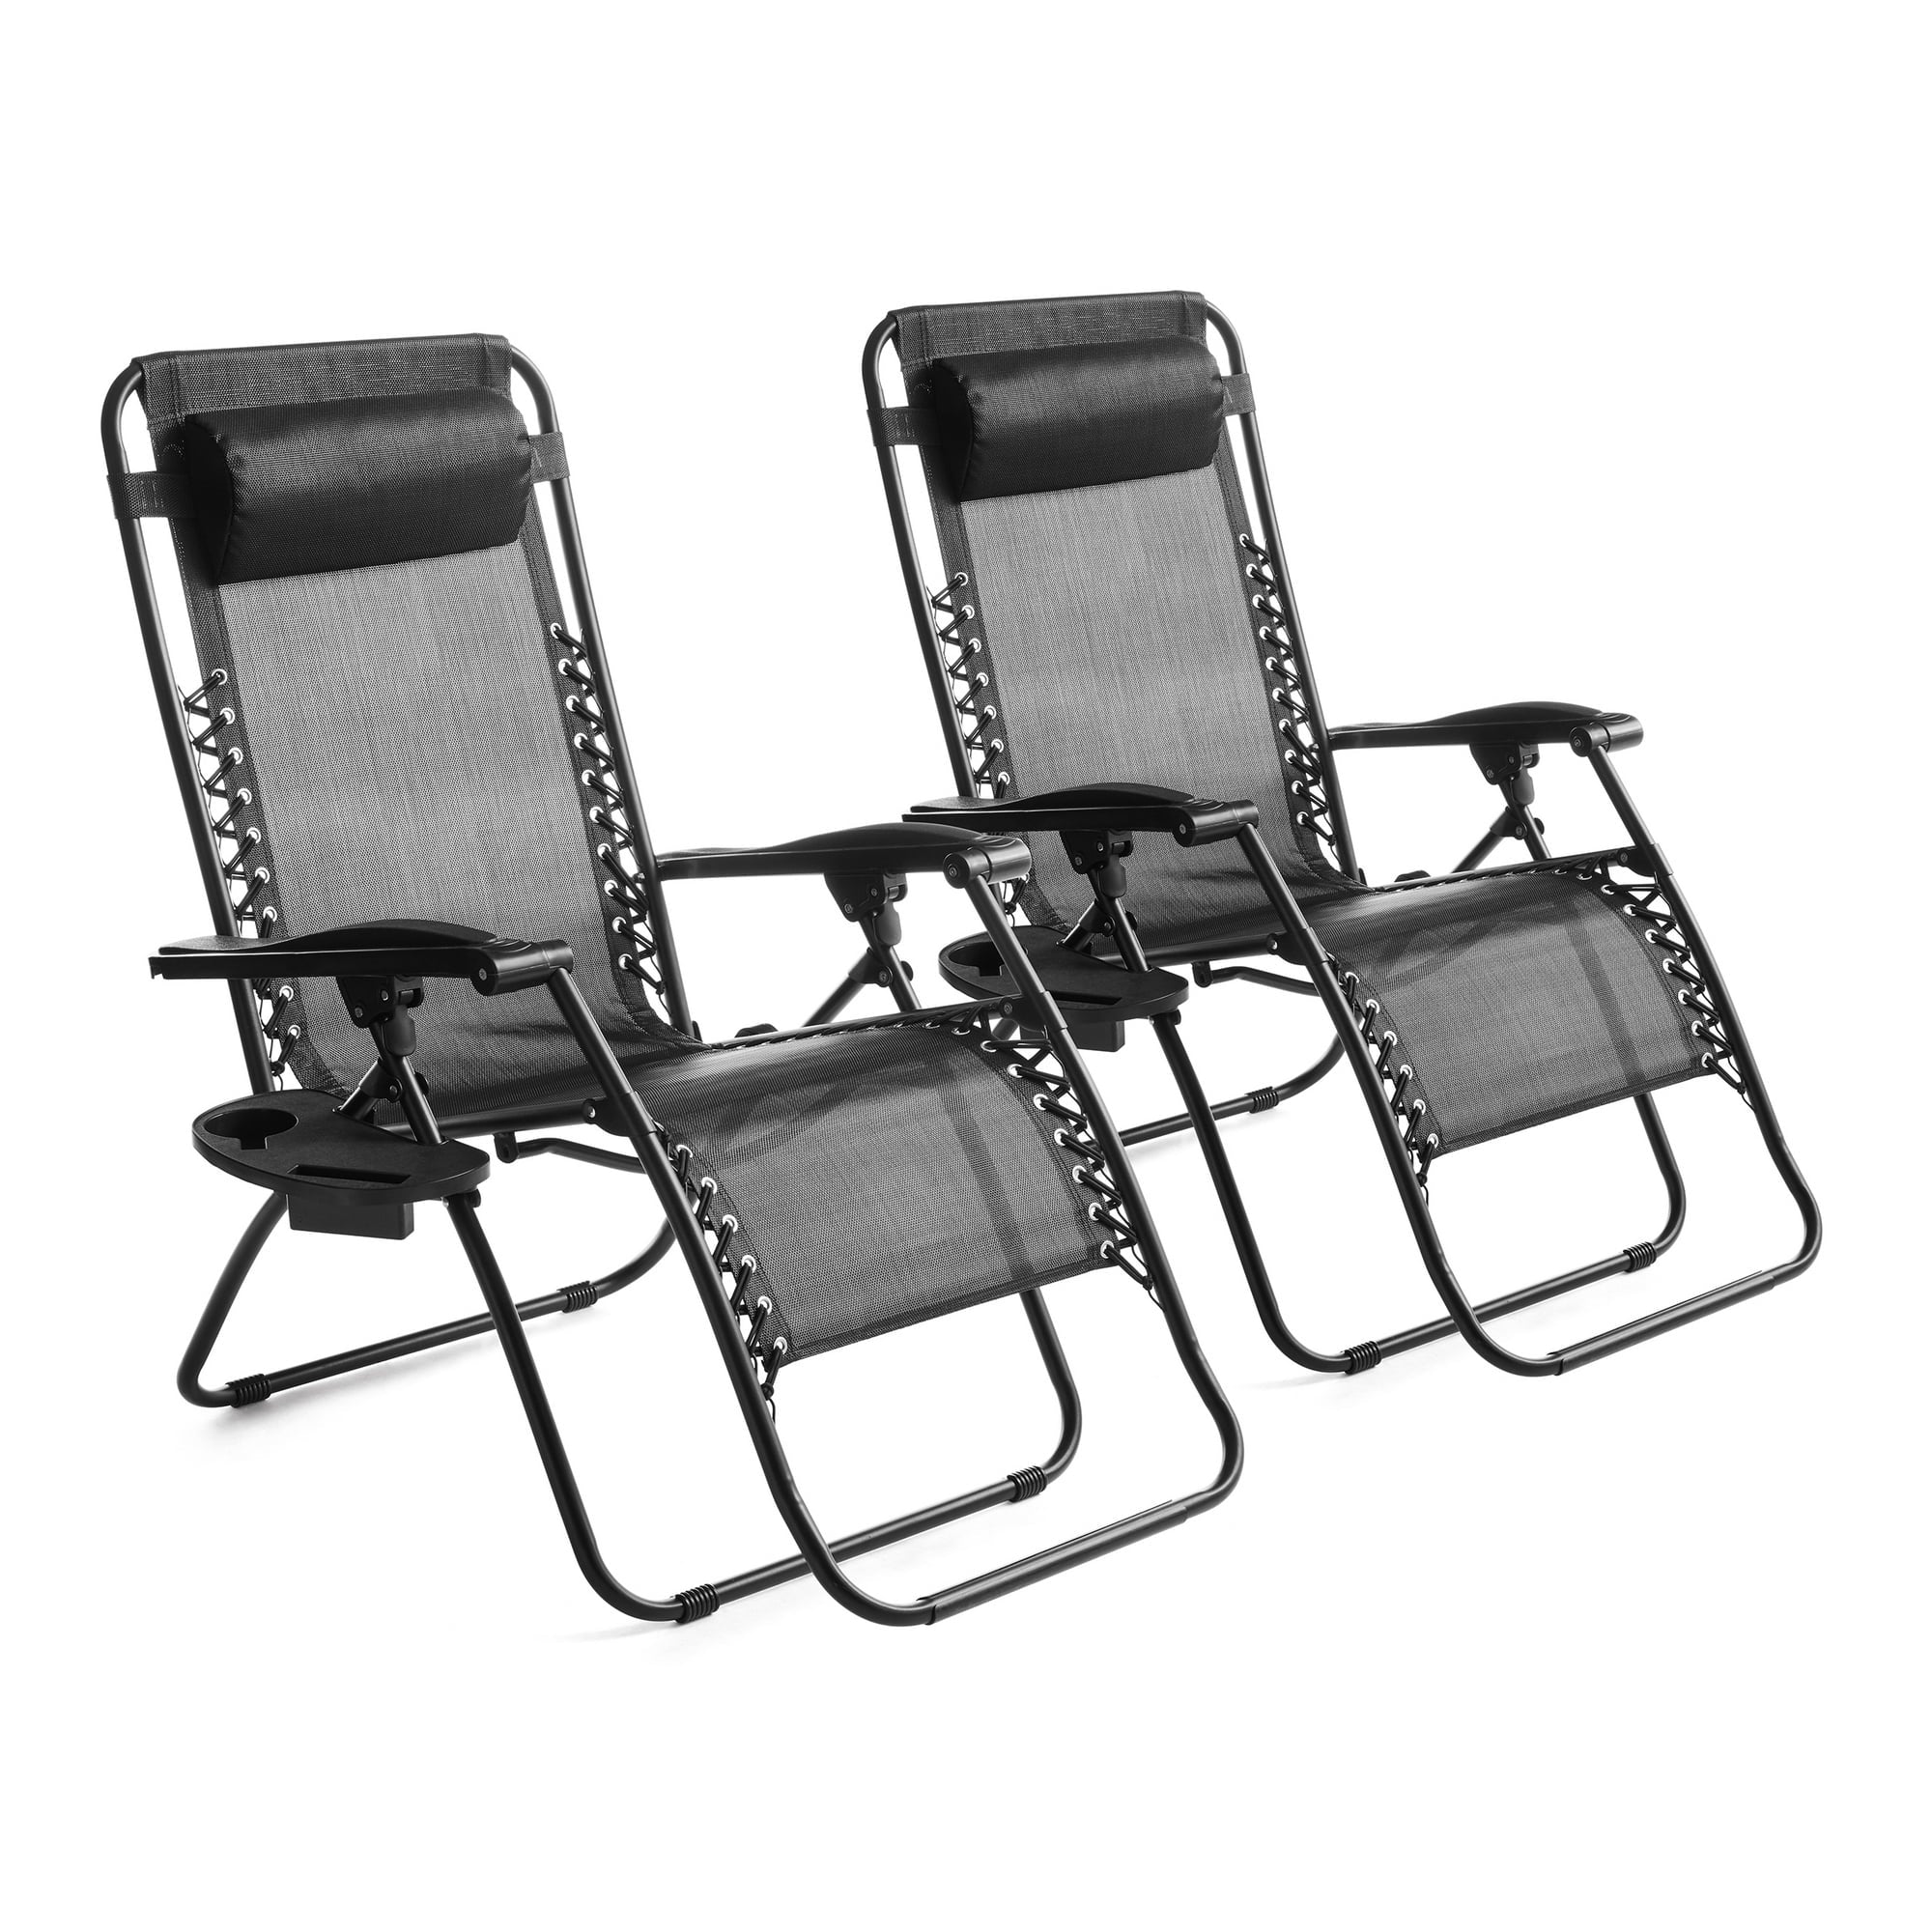 2 Mainstays Zero Gravity Chair